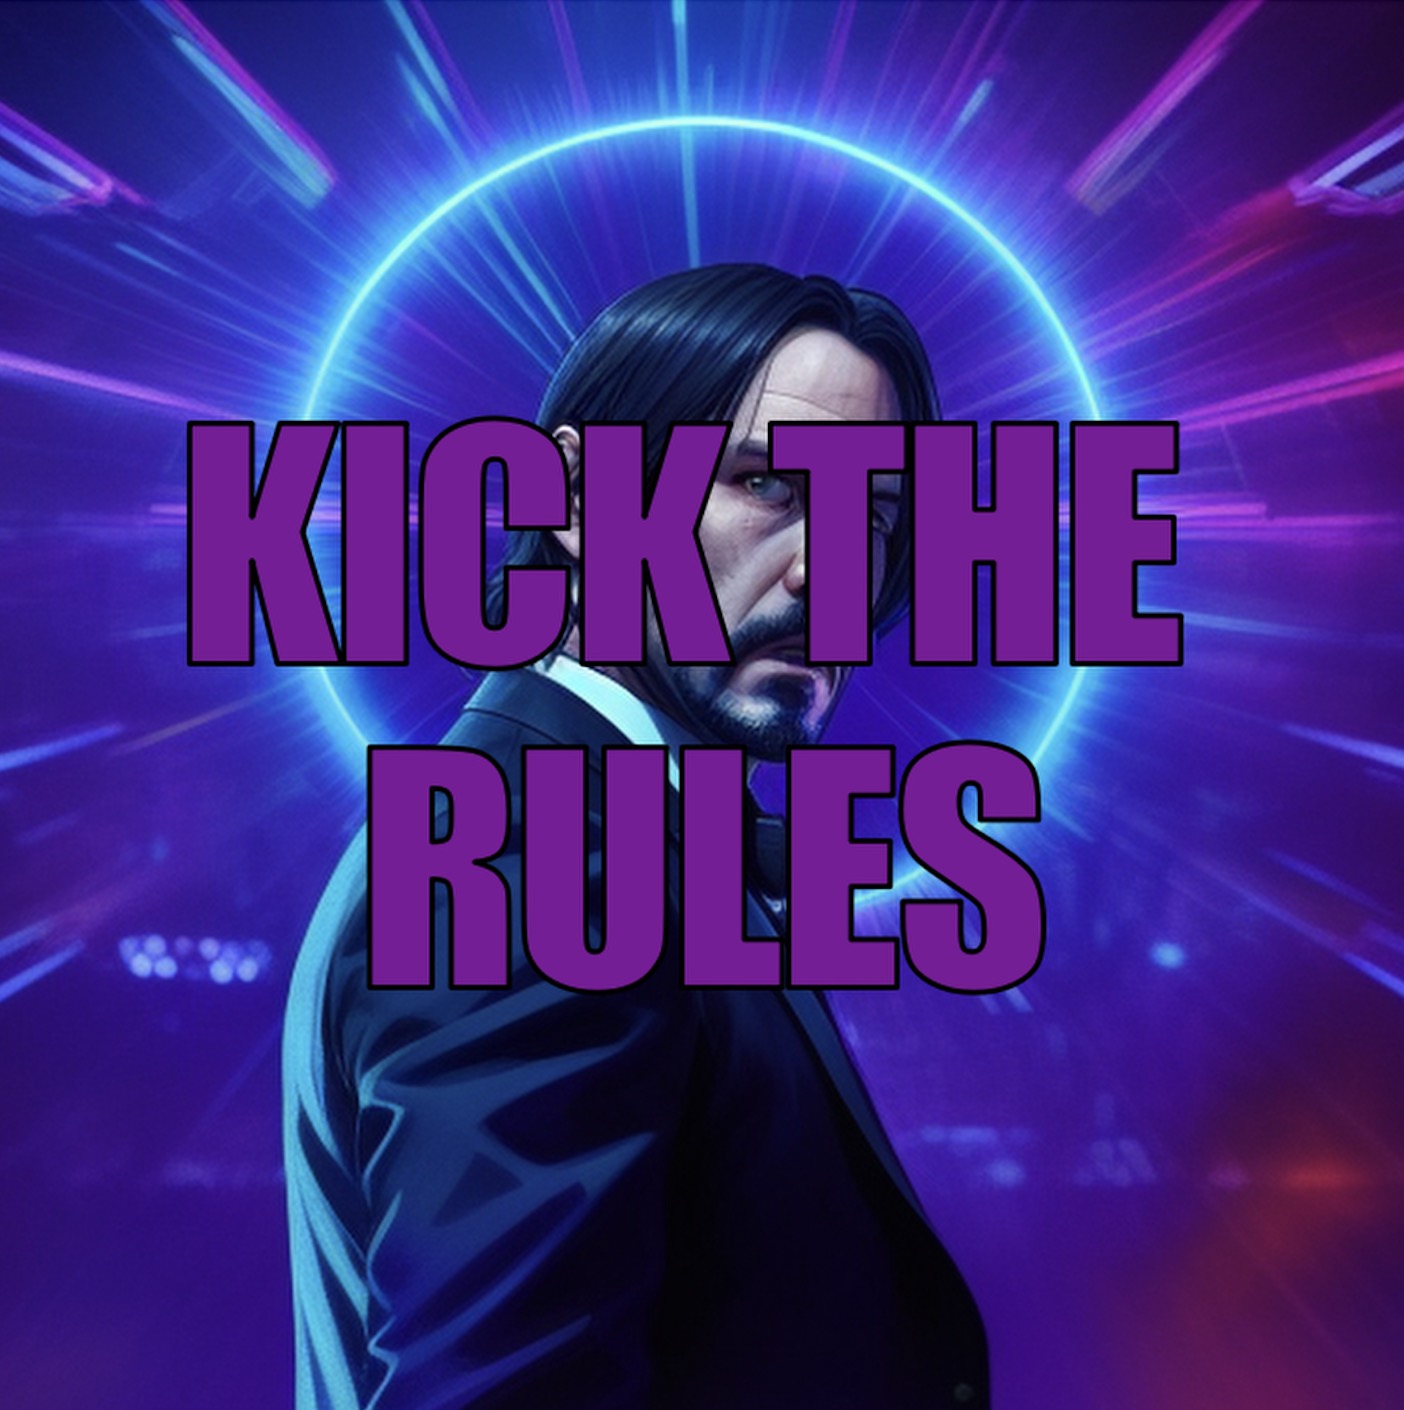 Kick the rules promo